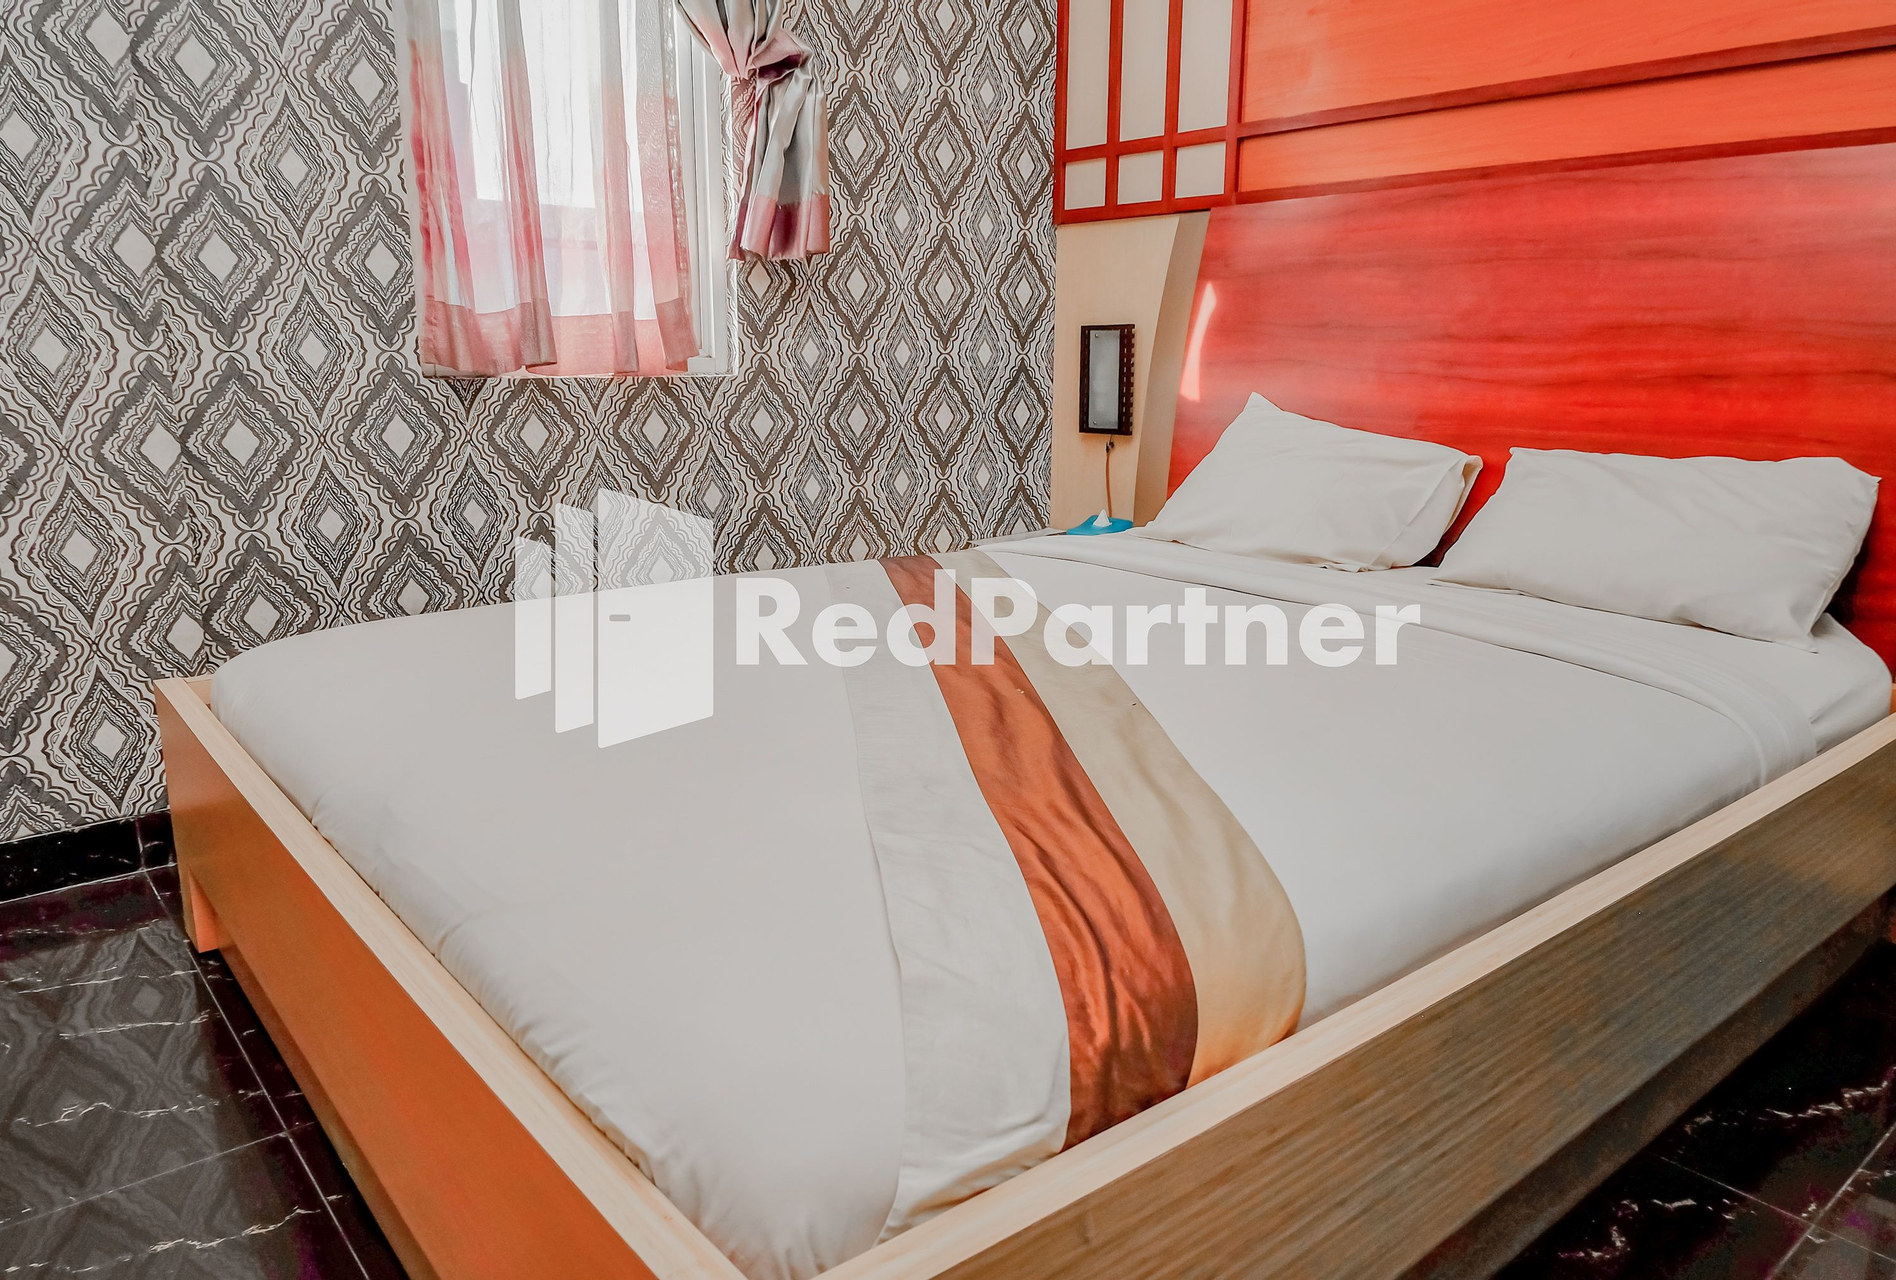 Hotel Wahaha RedPartner, Cirebon